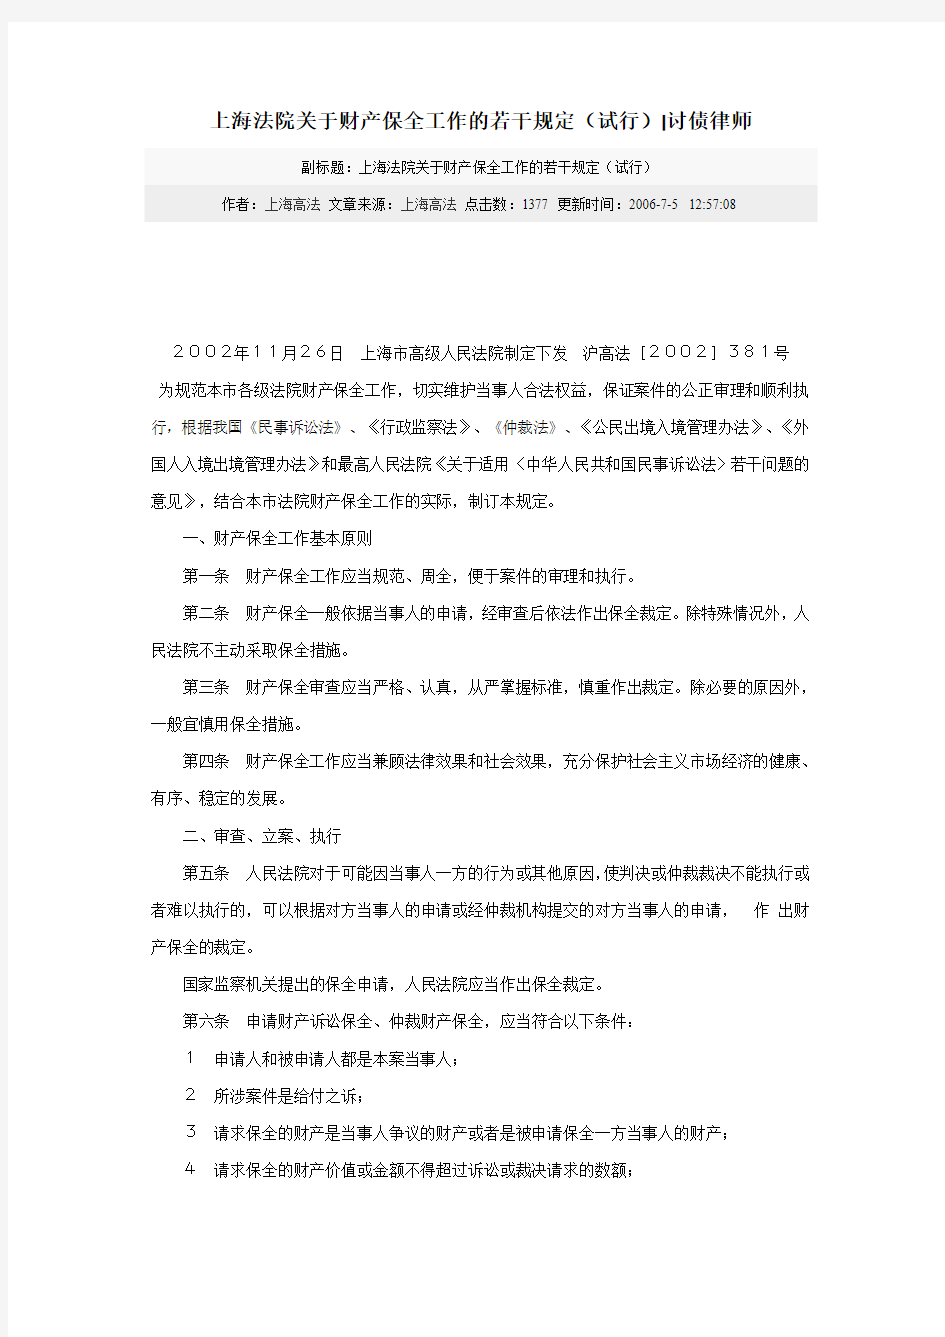 上海市高院关于财产保全的规定